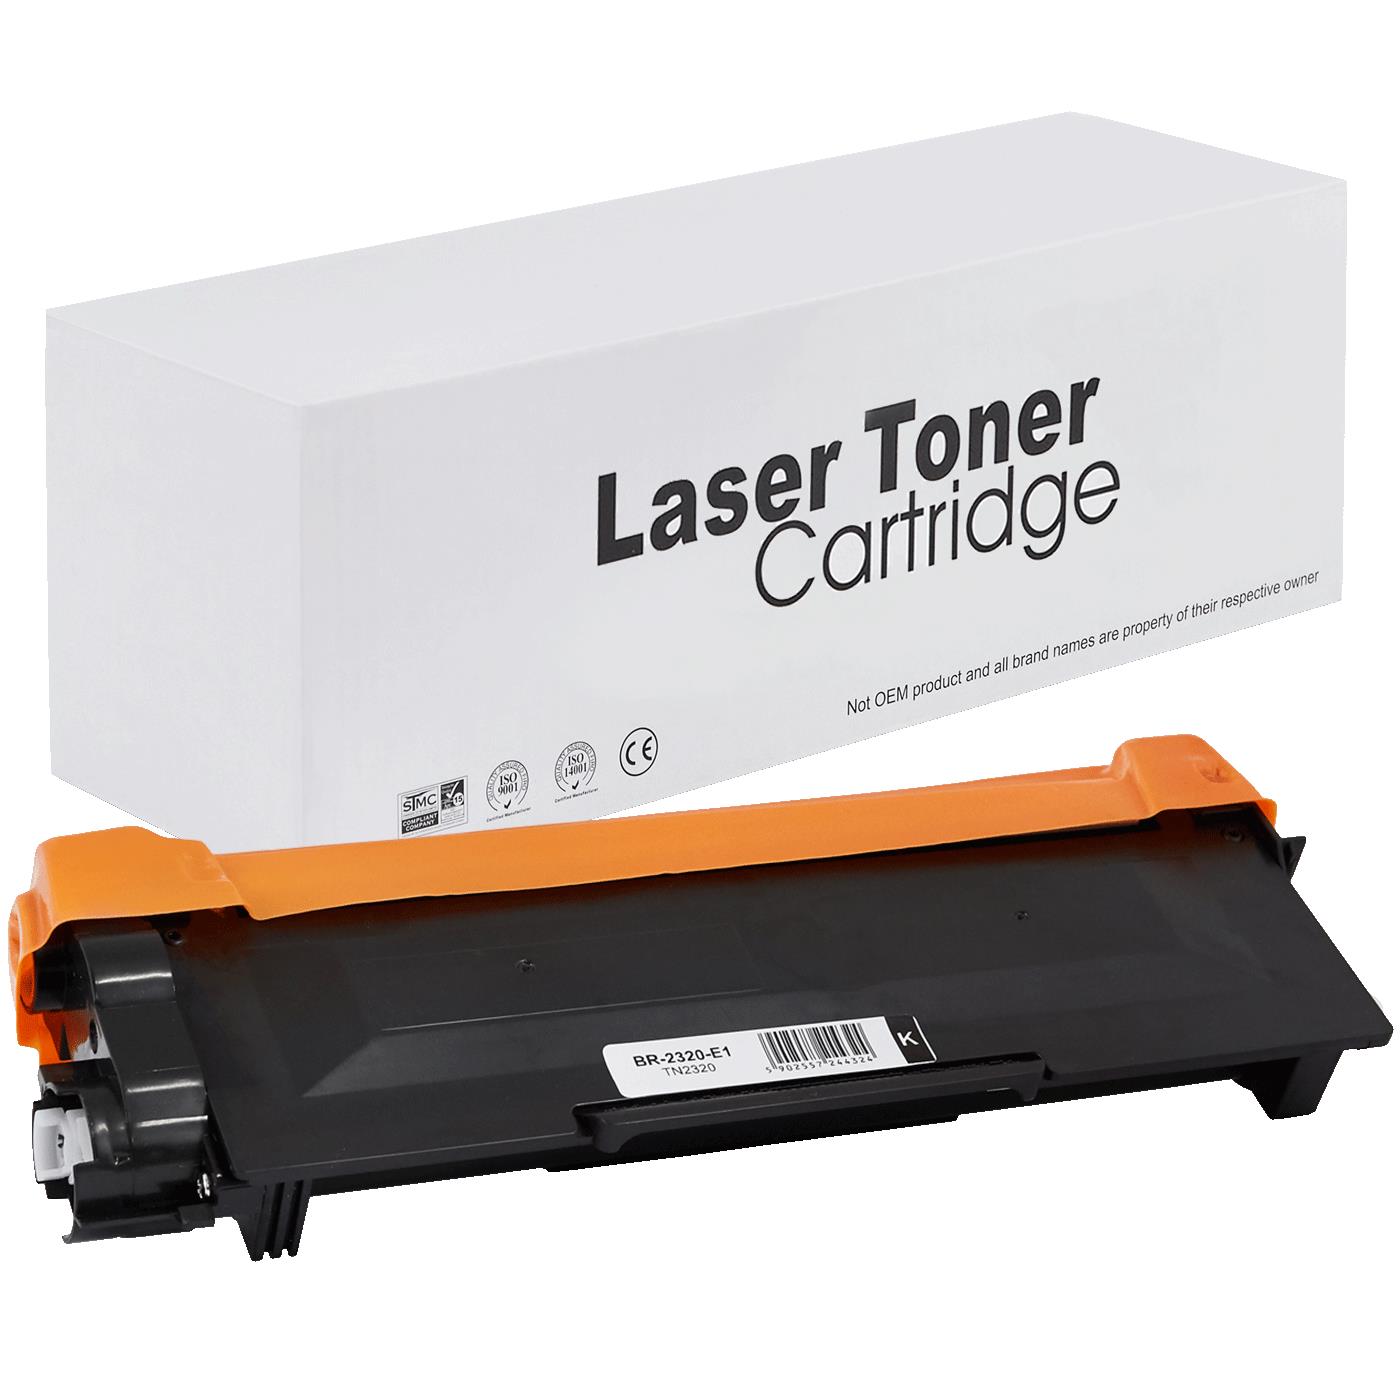 съвместима тонер касета за принтери и печатащи устройства на Brother DCP-L2560DW Toner BR-2320 | TN2320 / TN2310 / TN-2320. Ниски цени, прецизно изпълнение, високо качество.